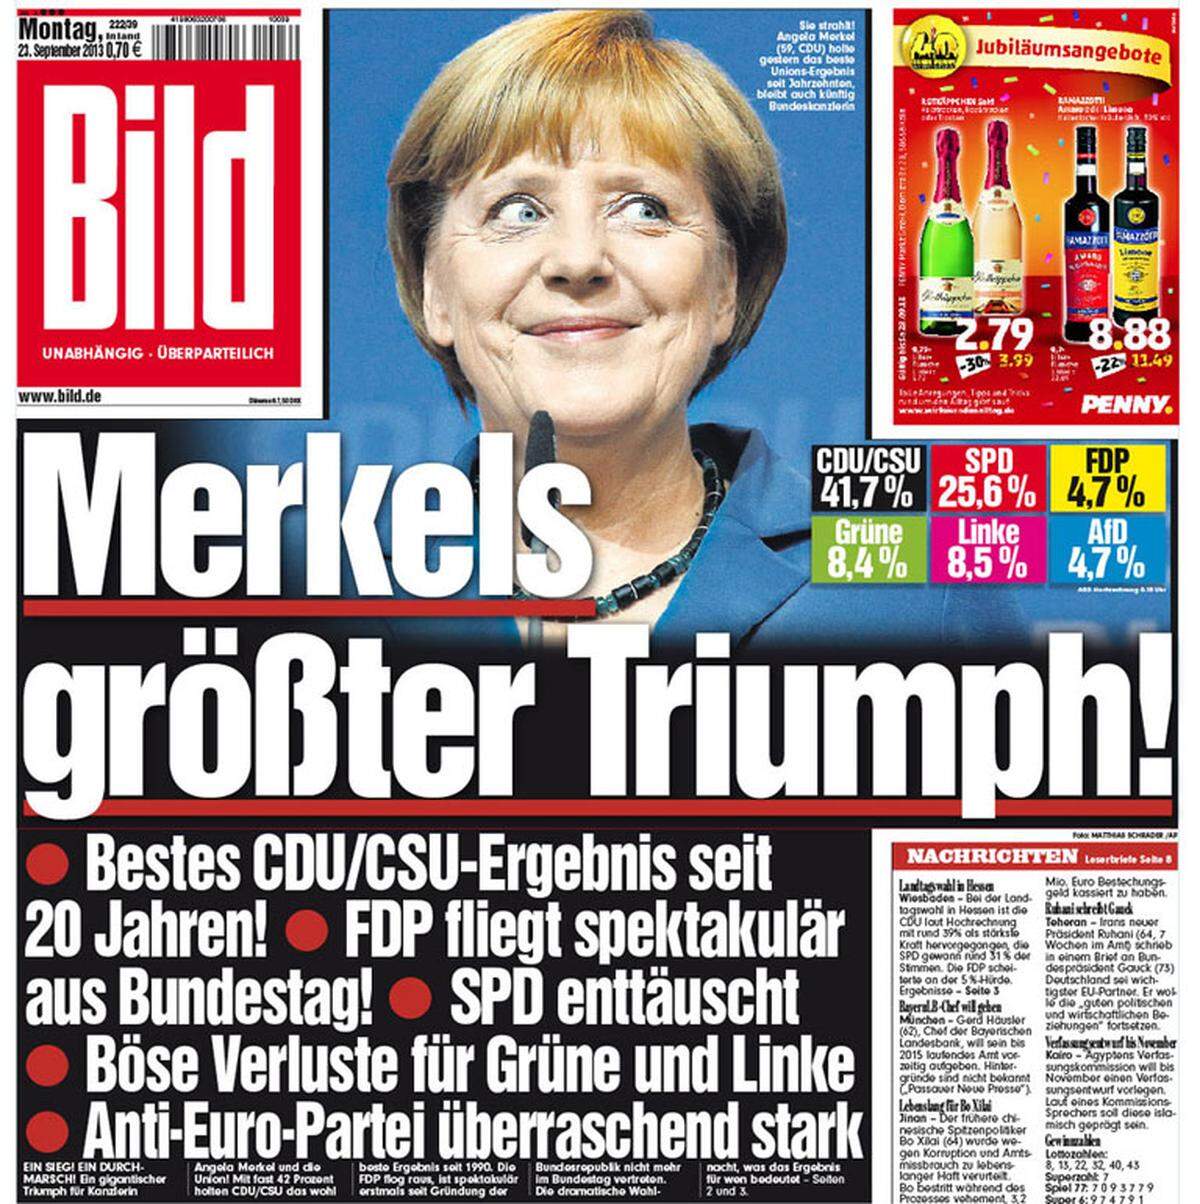 Die strahlende Wahl-Siegerin Angela Merkel ist auf allen deutschen Titelblättern vertreten - ein kleiner Überblick.